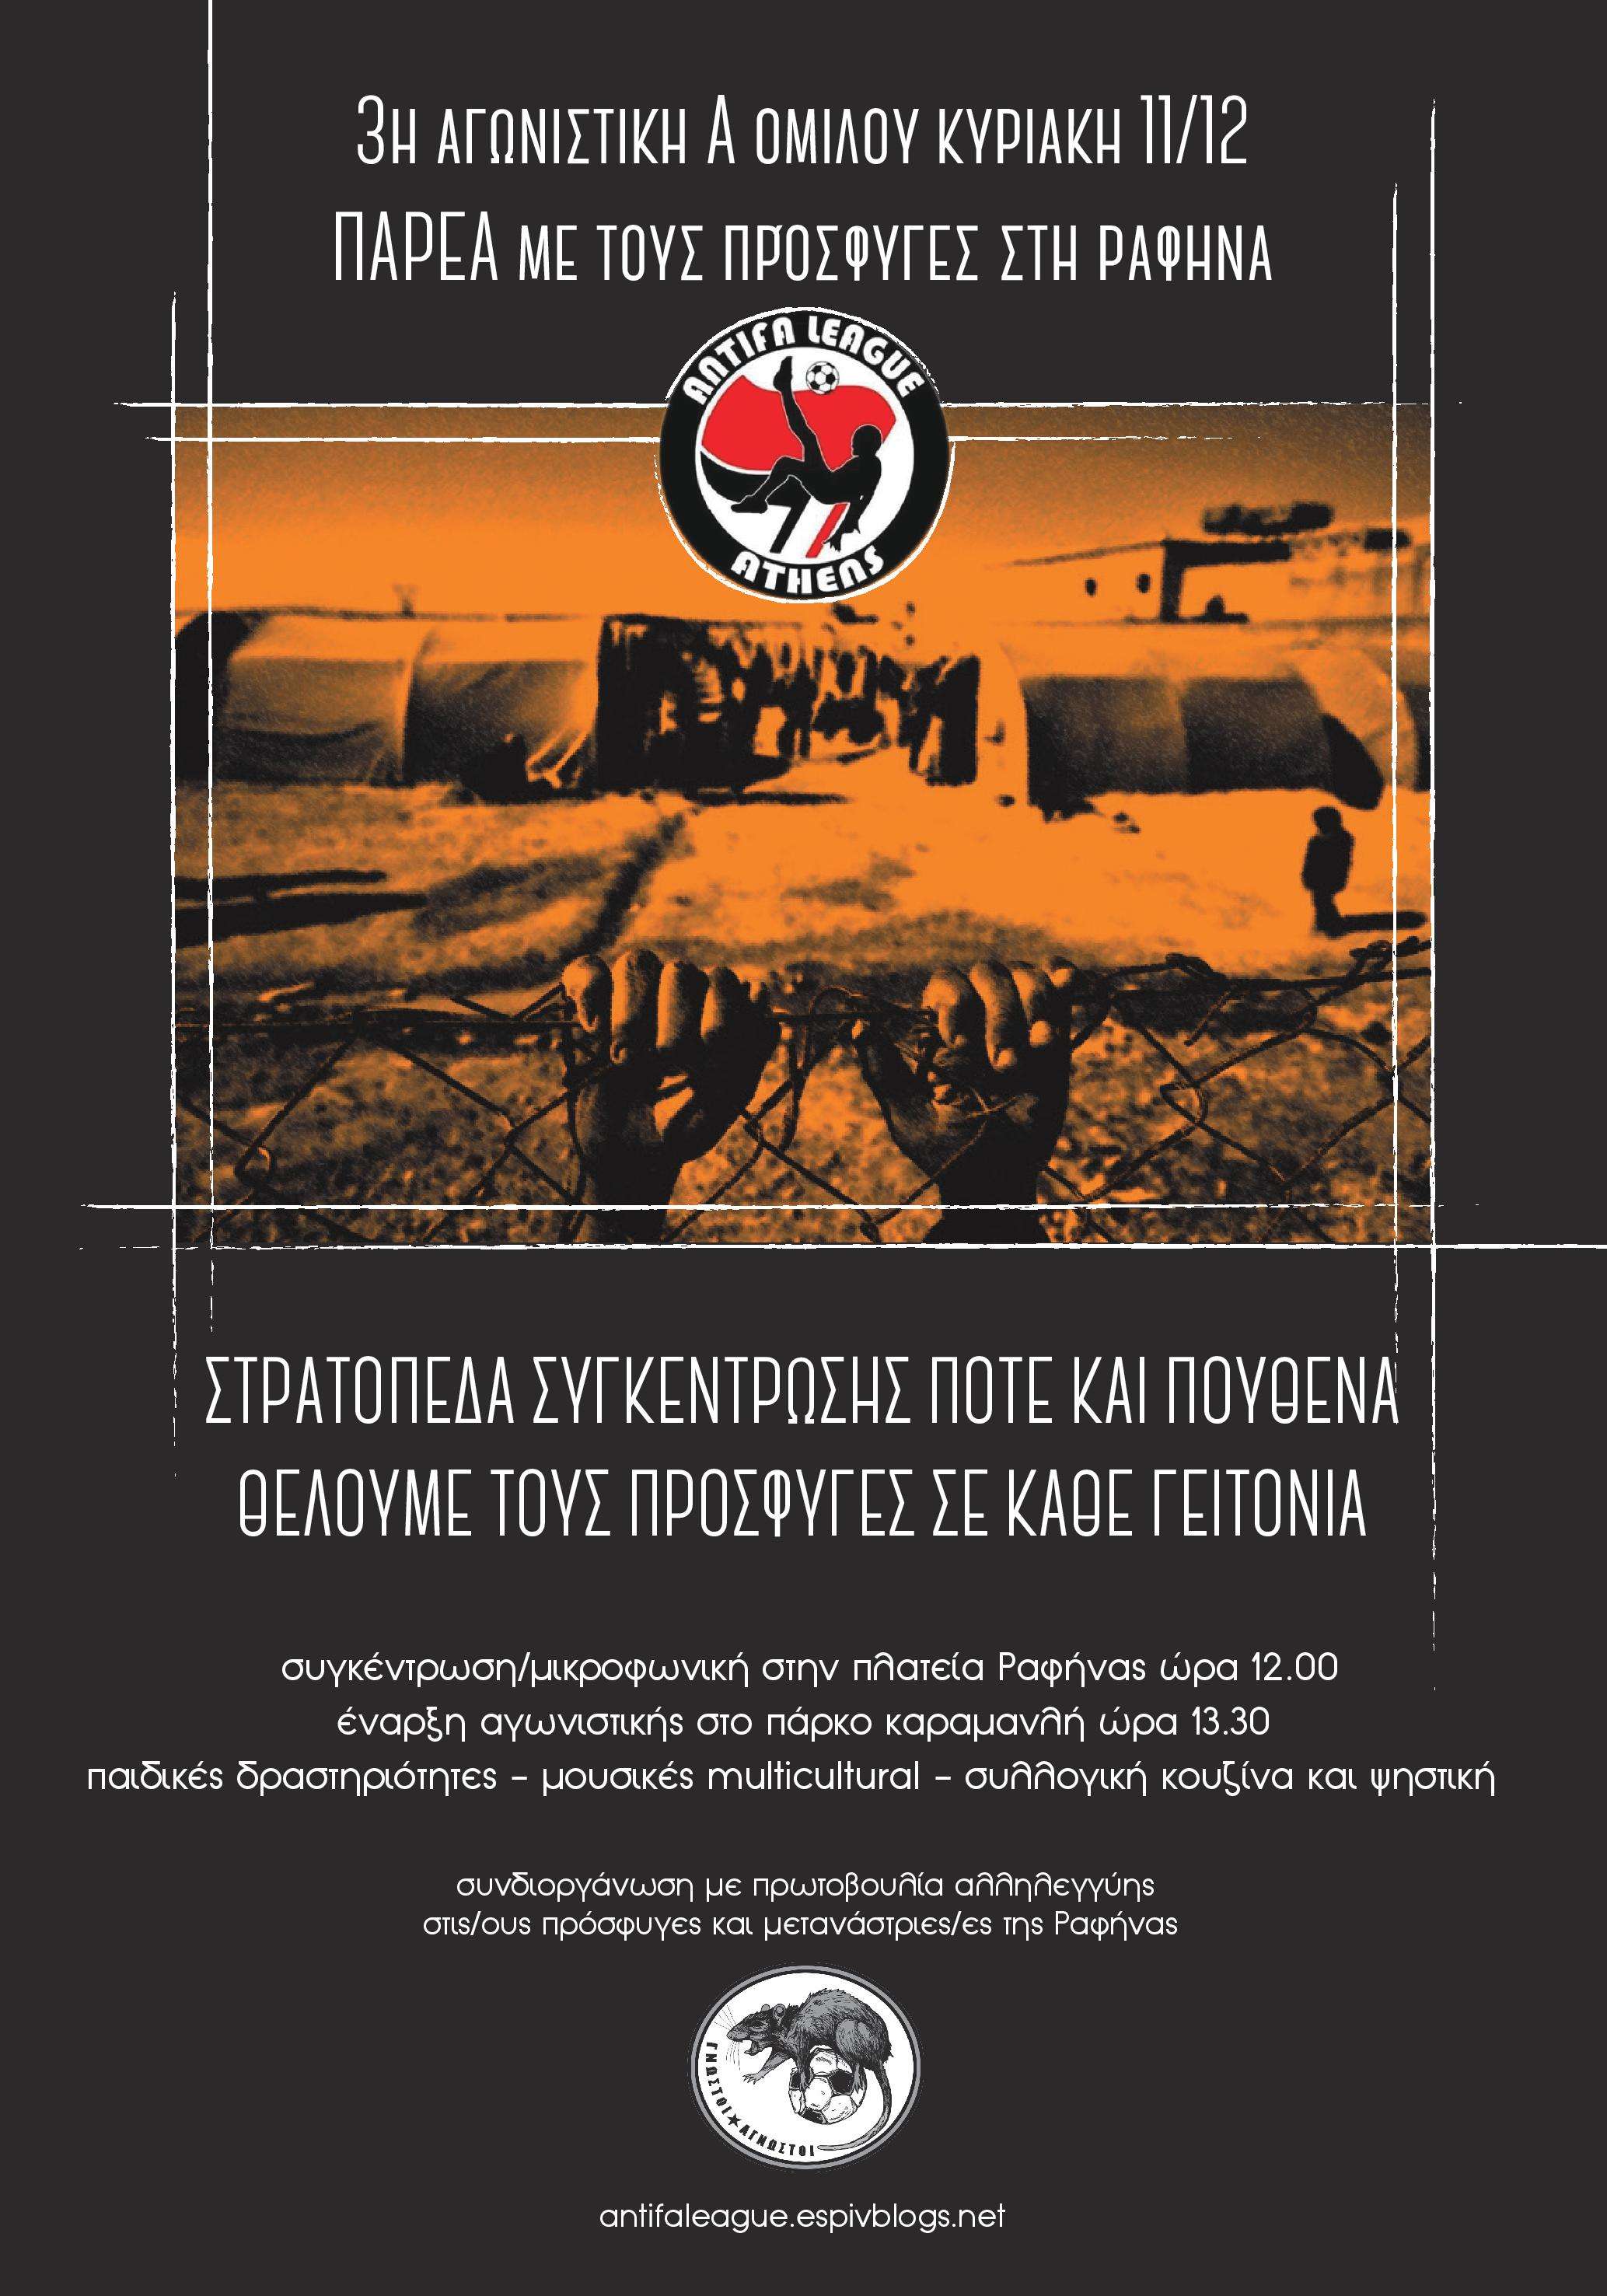 Antifa League Athens: Κάλεσμα 3ης αγωνιστικής Α ομίλου, στη Ραφήνα παρέα με τους πρόσφυγες [11/12, 12:00]